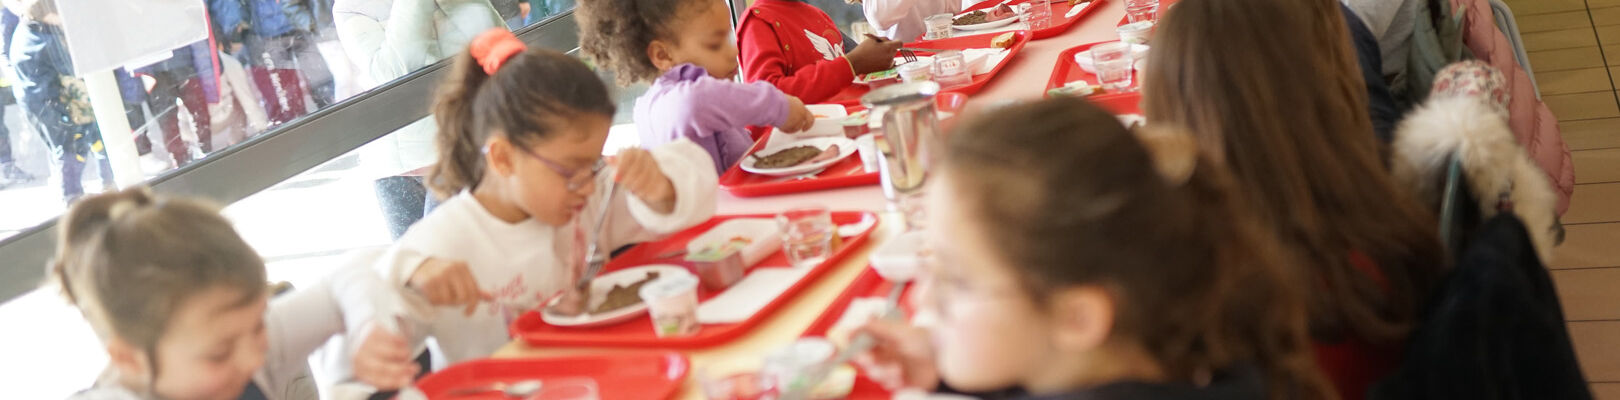 Les enfants de l'école scolaire mangent grâce à la restauration scolaire de l'école.